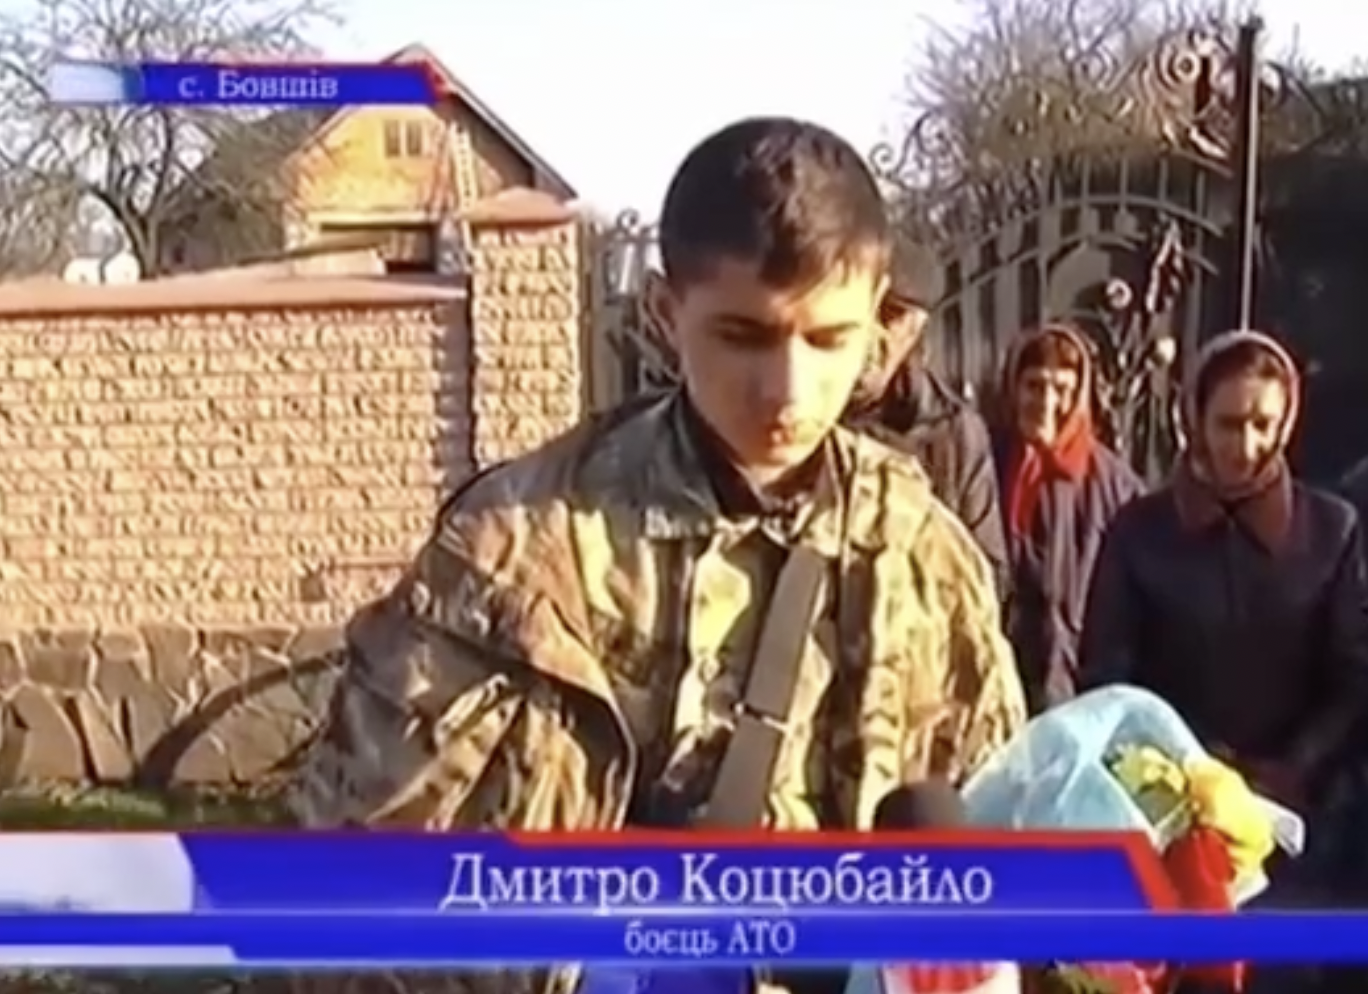 Тогда "Да Винчи" было всего 19: в сети вспомнили архивное видео возвращения Дмитрия Коцюбайло в родное село после ранения